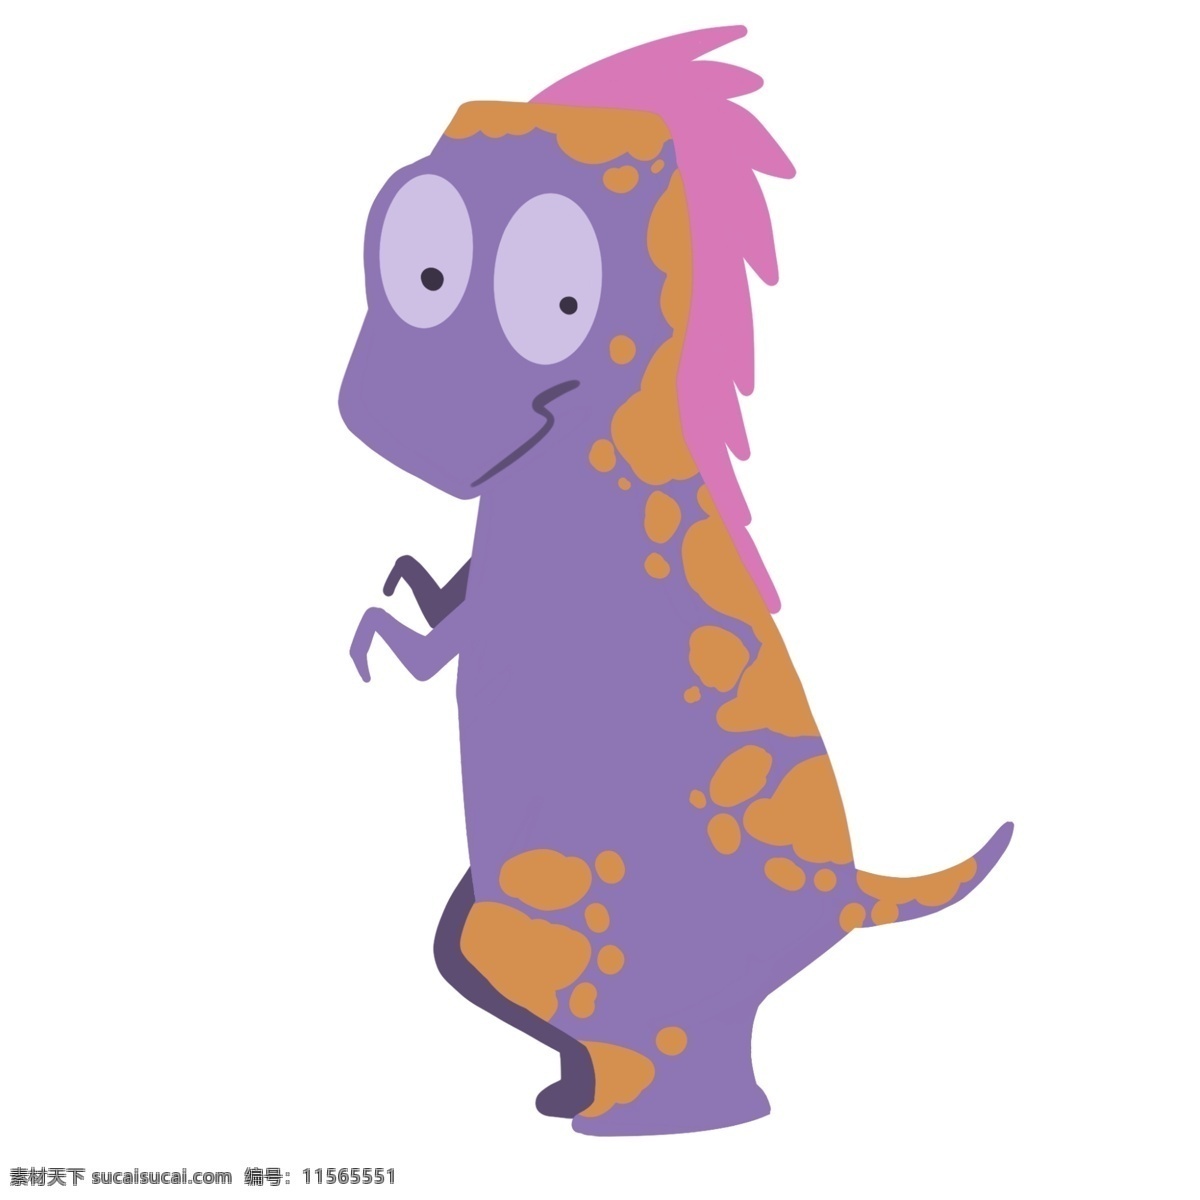 可爱 紫色 恐龙 插画 花纹小恐龙 小恐龙 可爱紫色恐龙 野生动物 花纹玩具恐龙 玩具恐龙插画